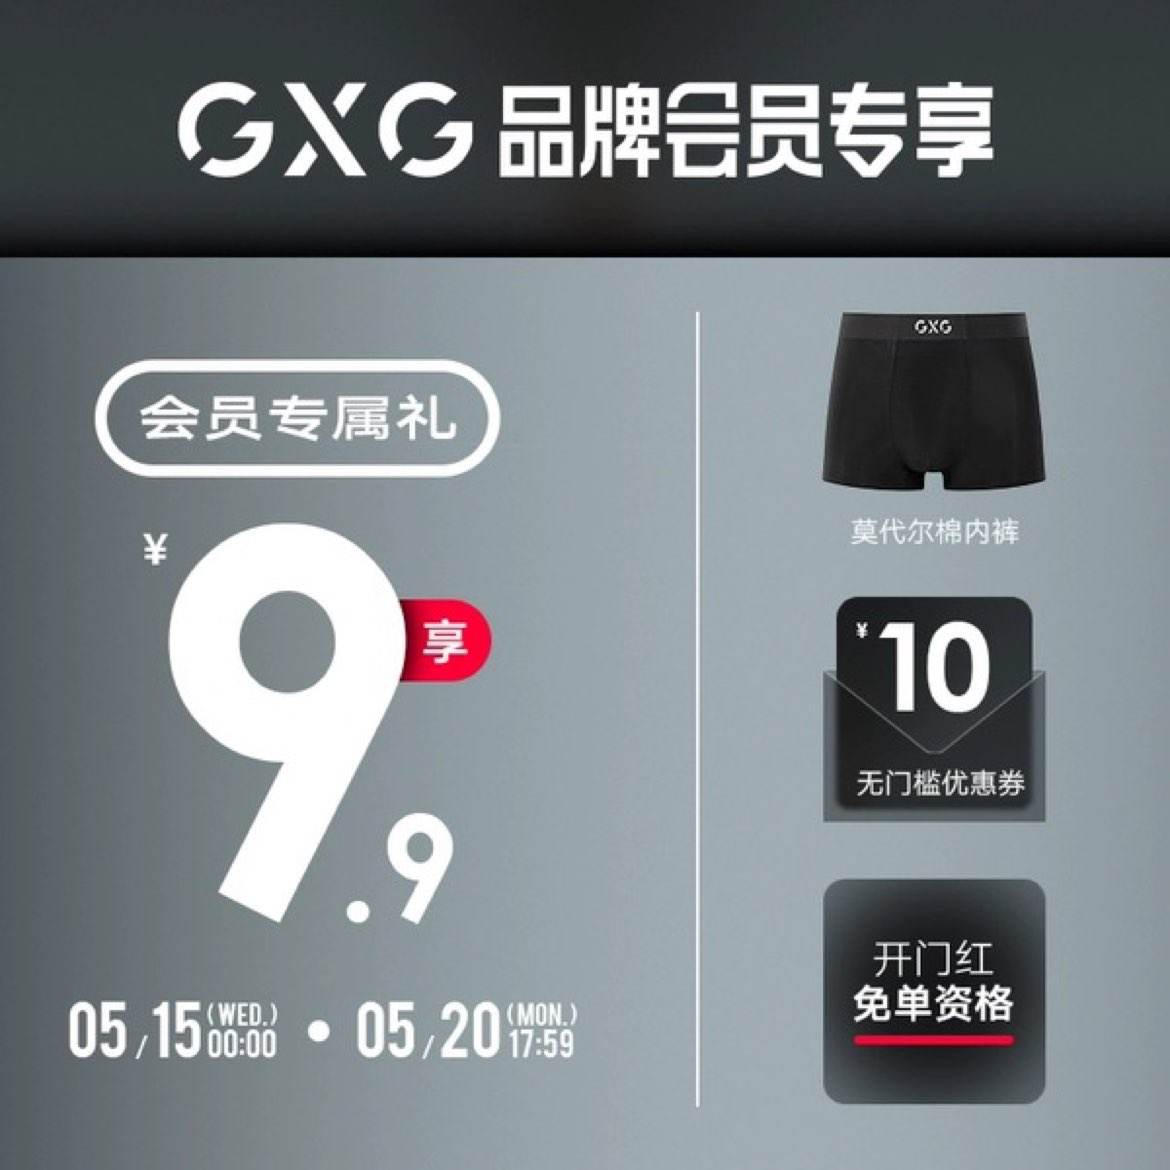 GXG 会员礼包 享莫代尔内裤+开门红免单资格+10元礼券 9.9元包邮